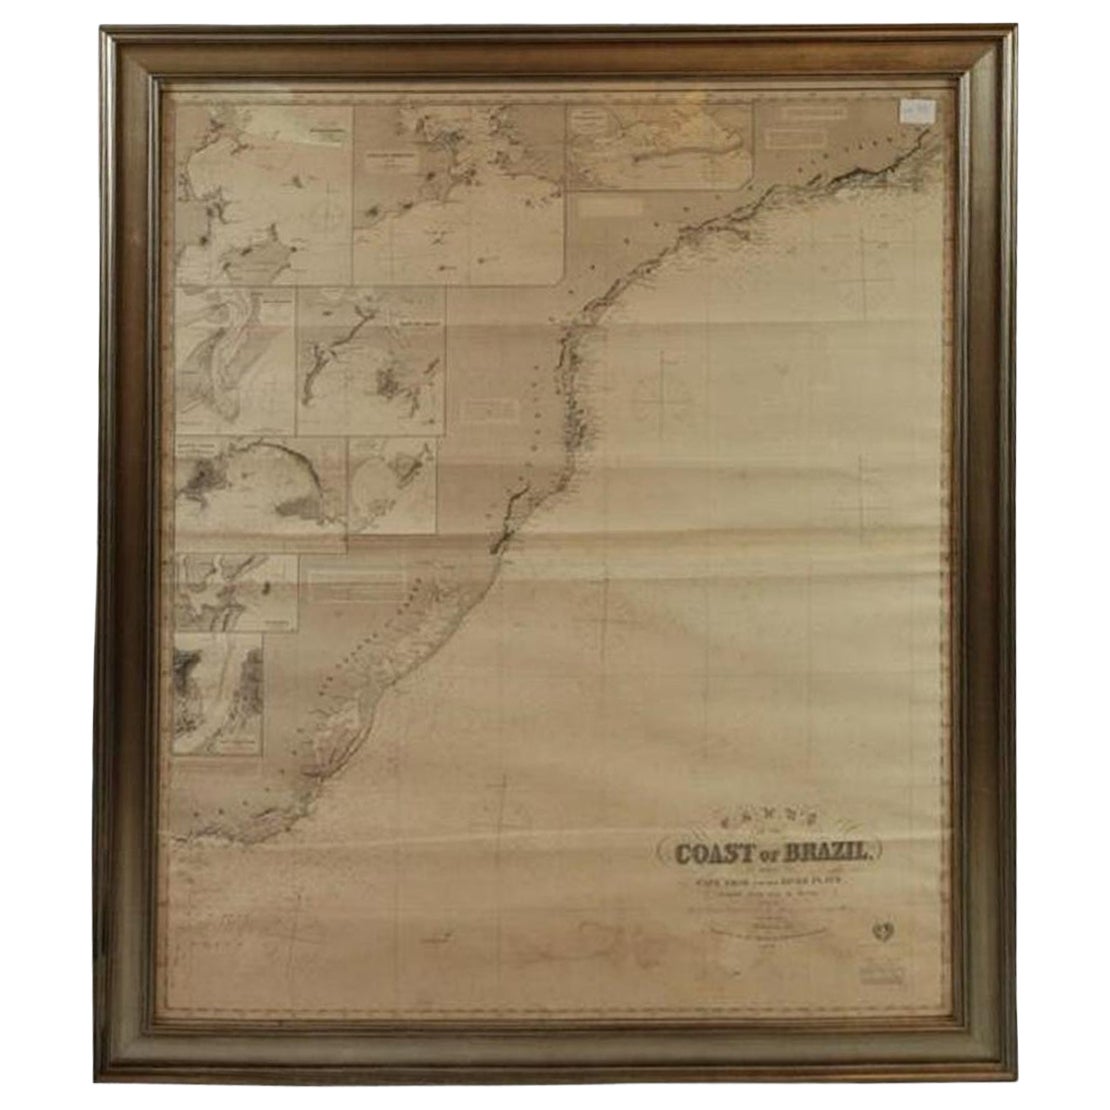 Carte de l'océanographie de la côte du Brésil - Imray 1876